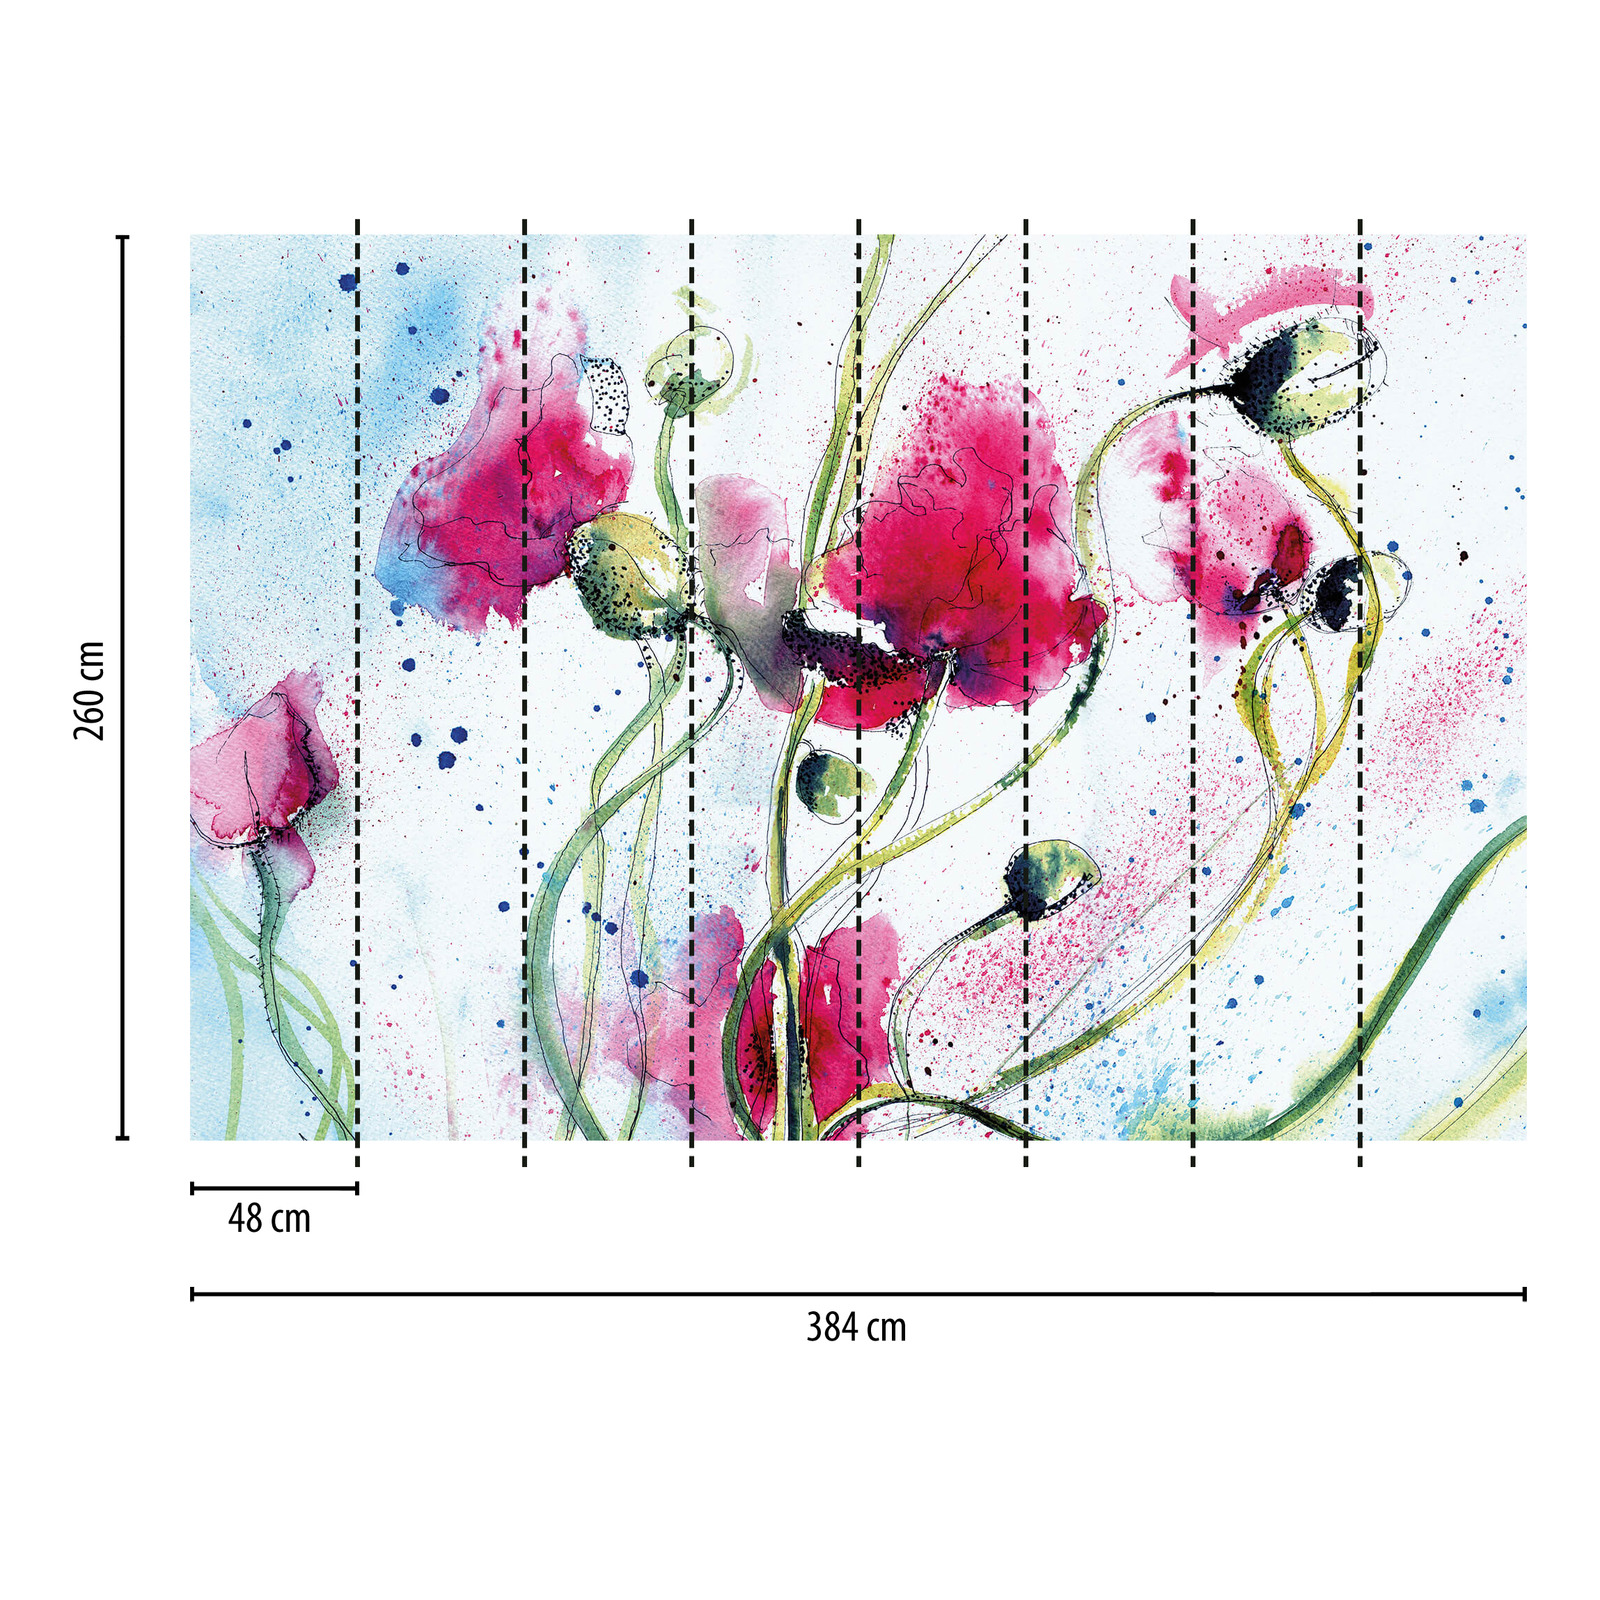             Fototapete Blumen gezeichnet – Rosa, Grün
        